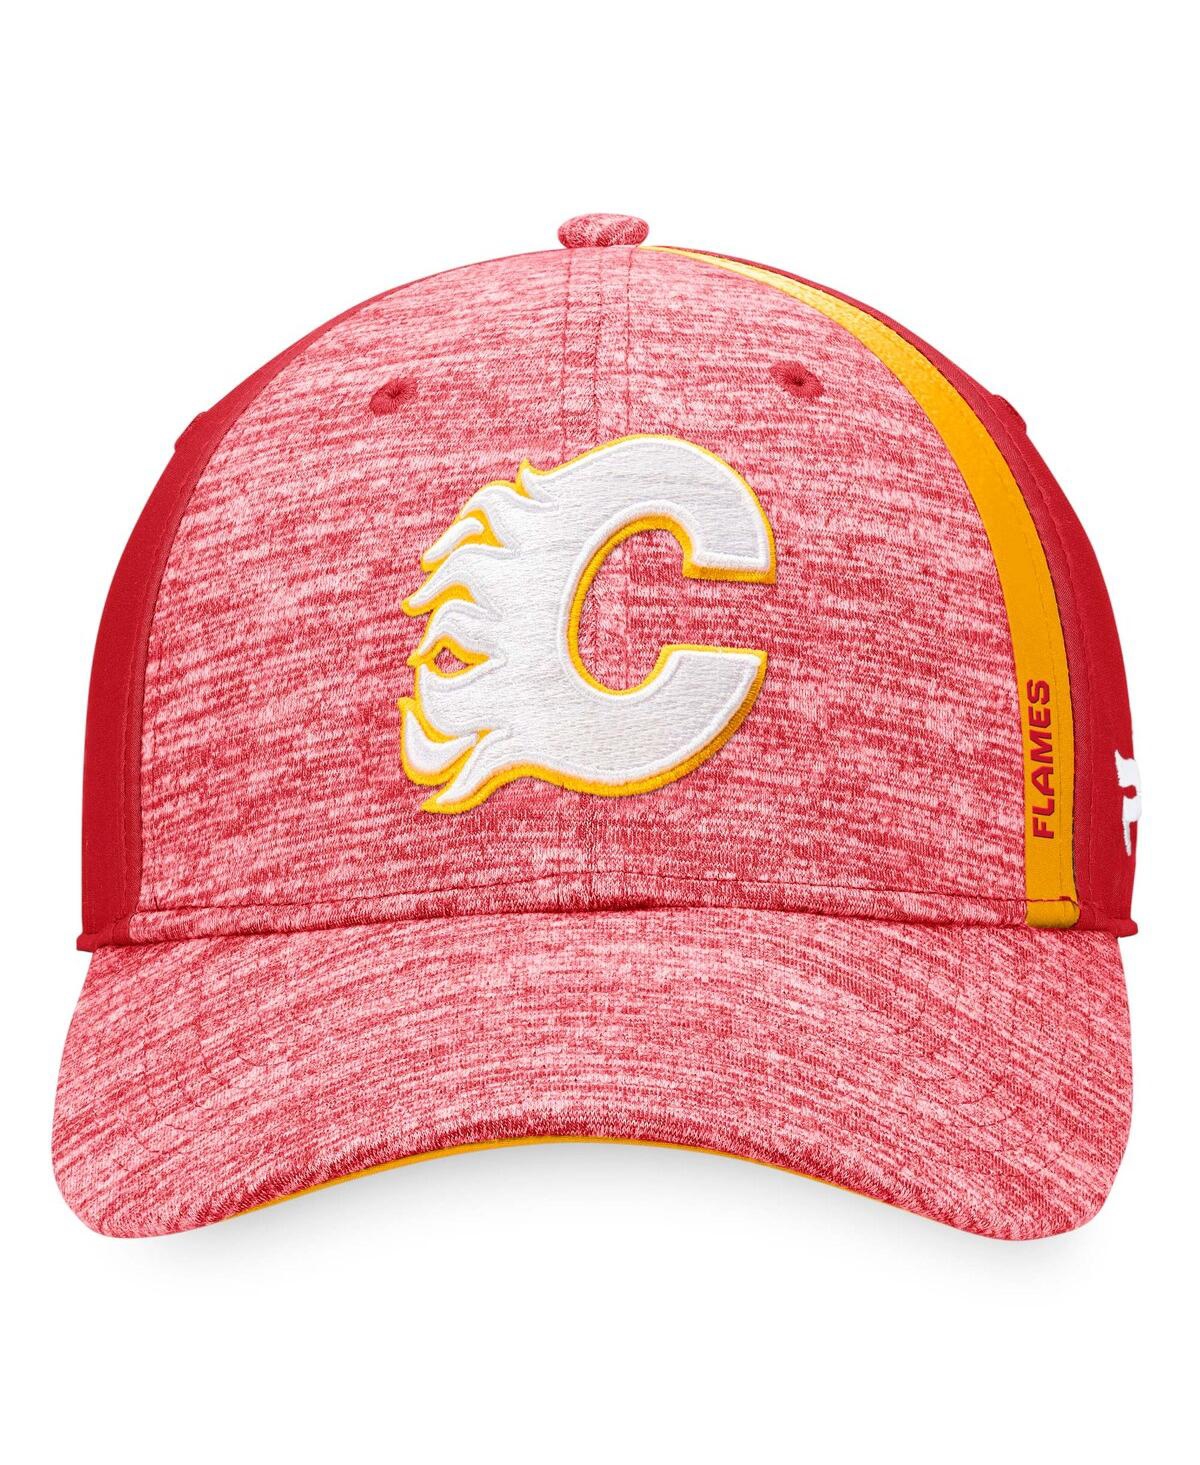 Shop Fanatics Men's  Heather Red Calgary Flames Defender Flex Hat